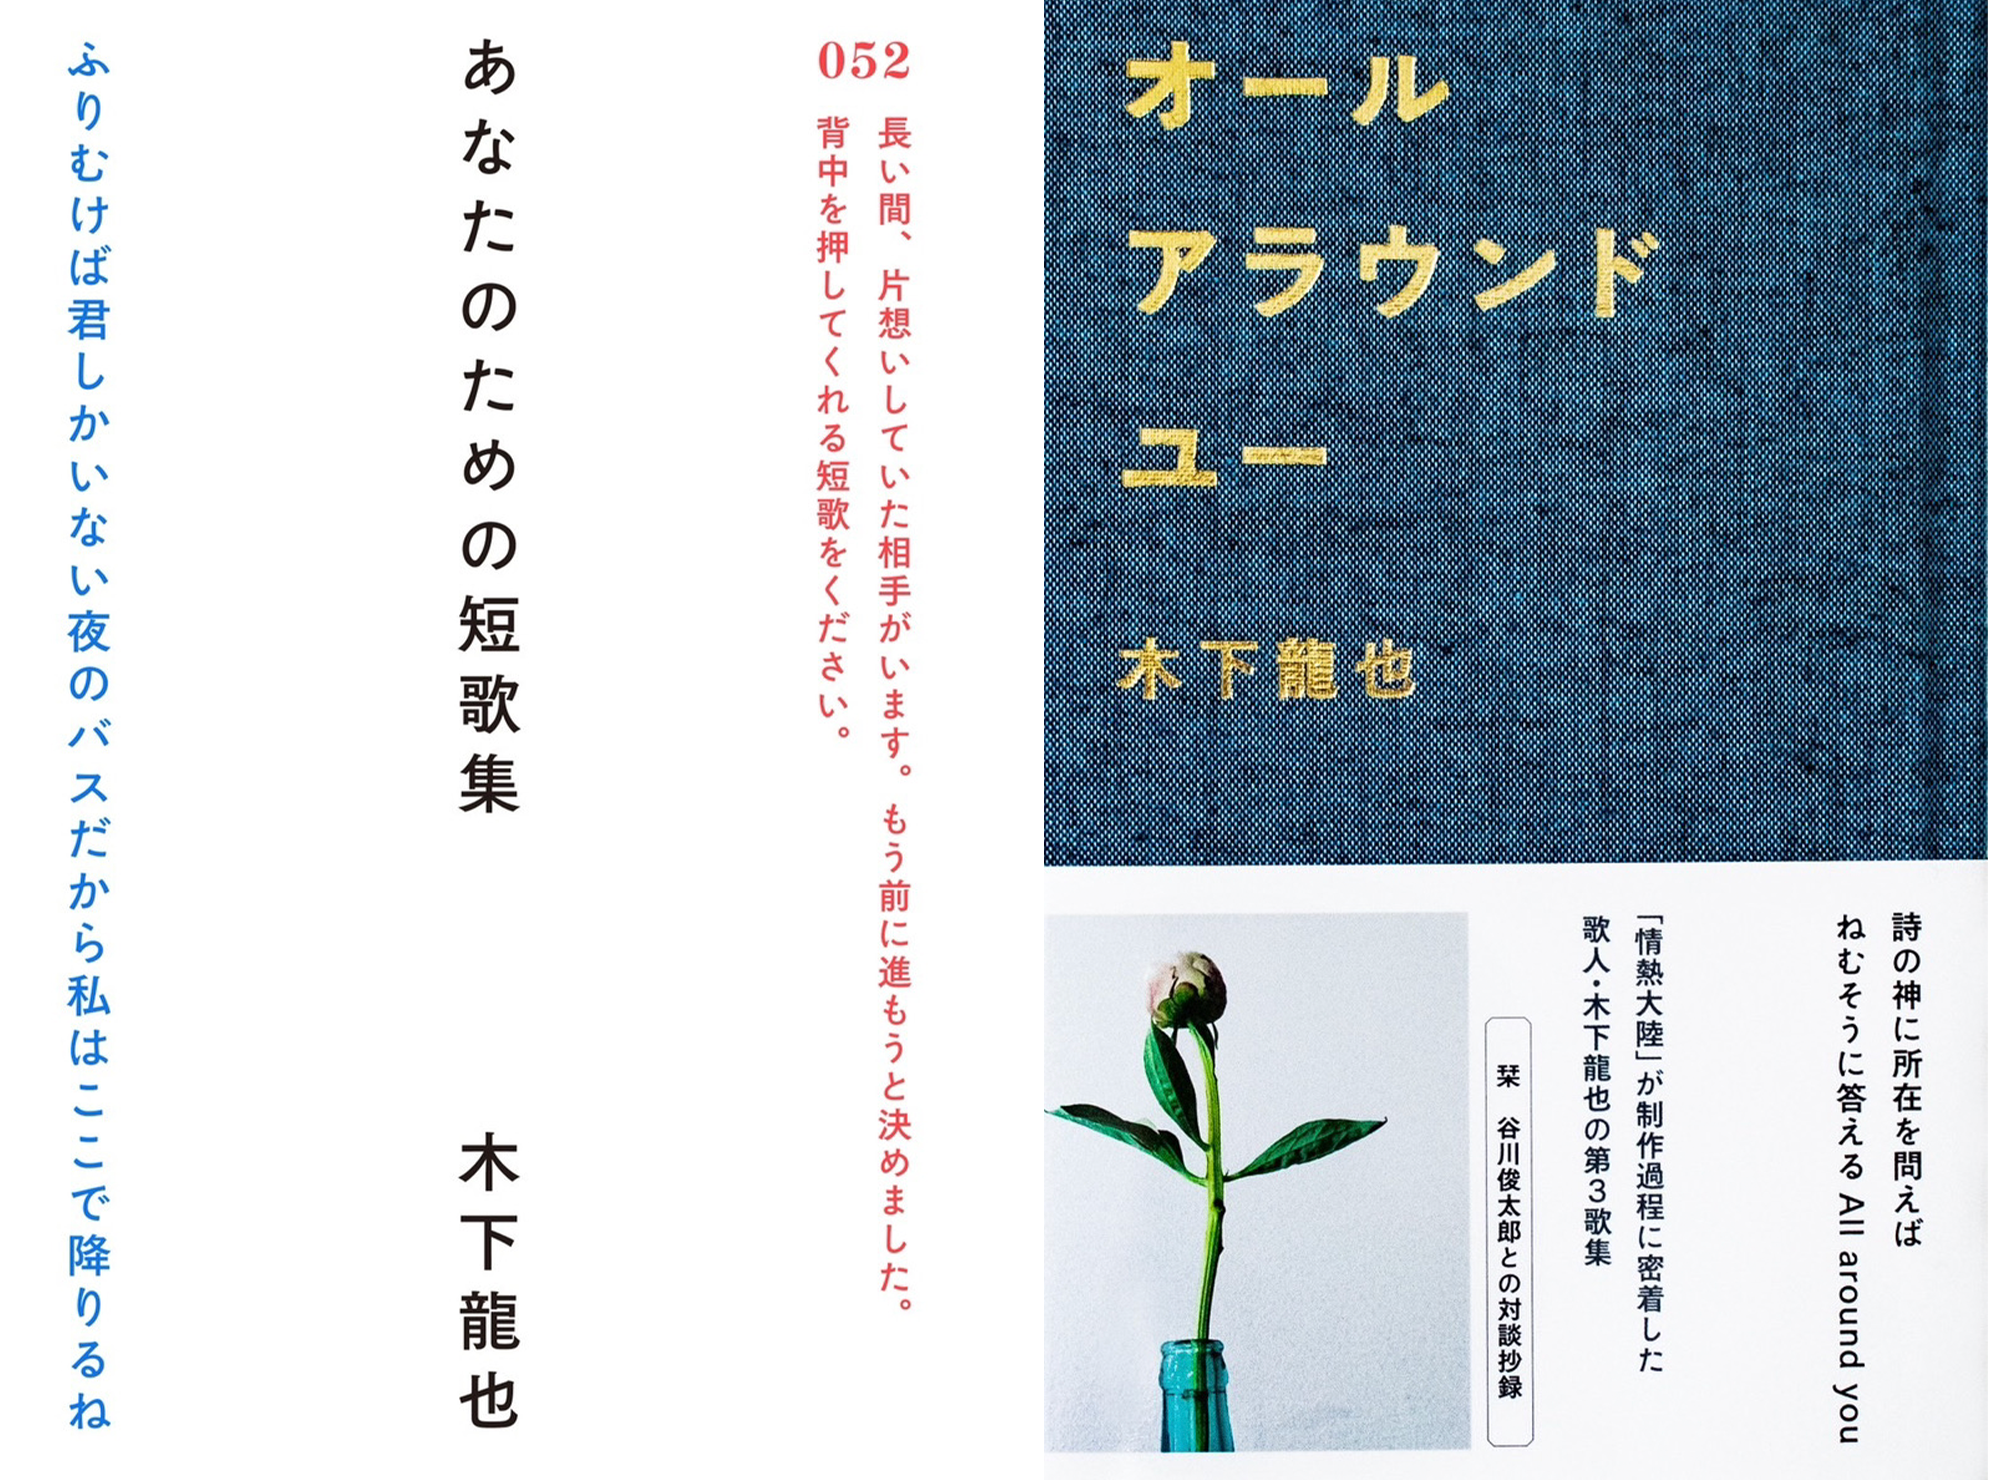 Books by Tatsuya Kinoshita